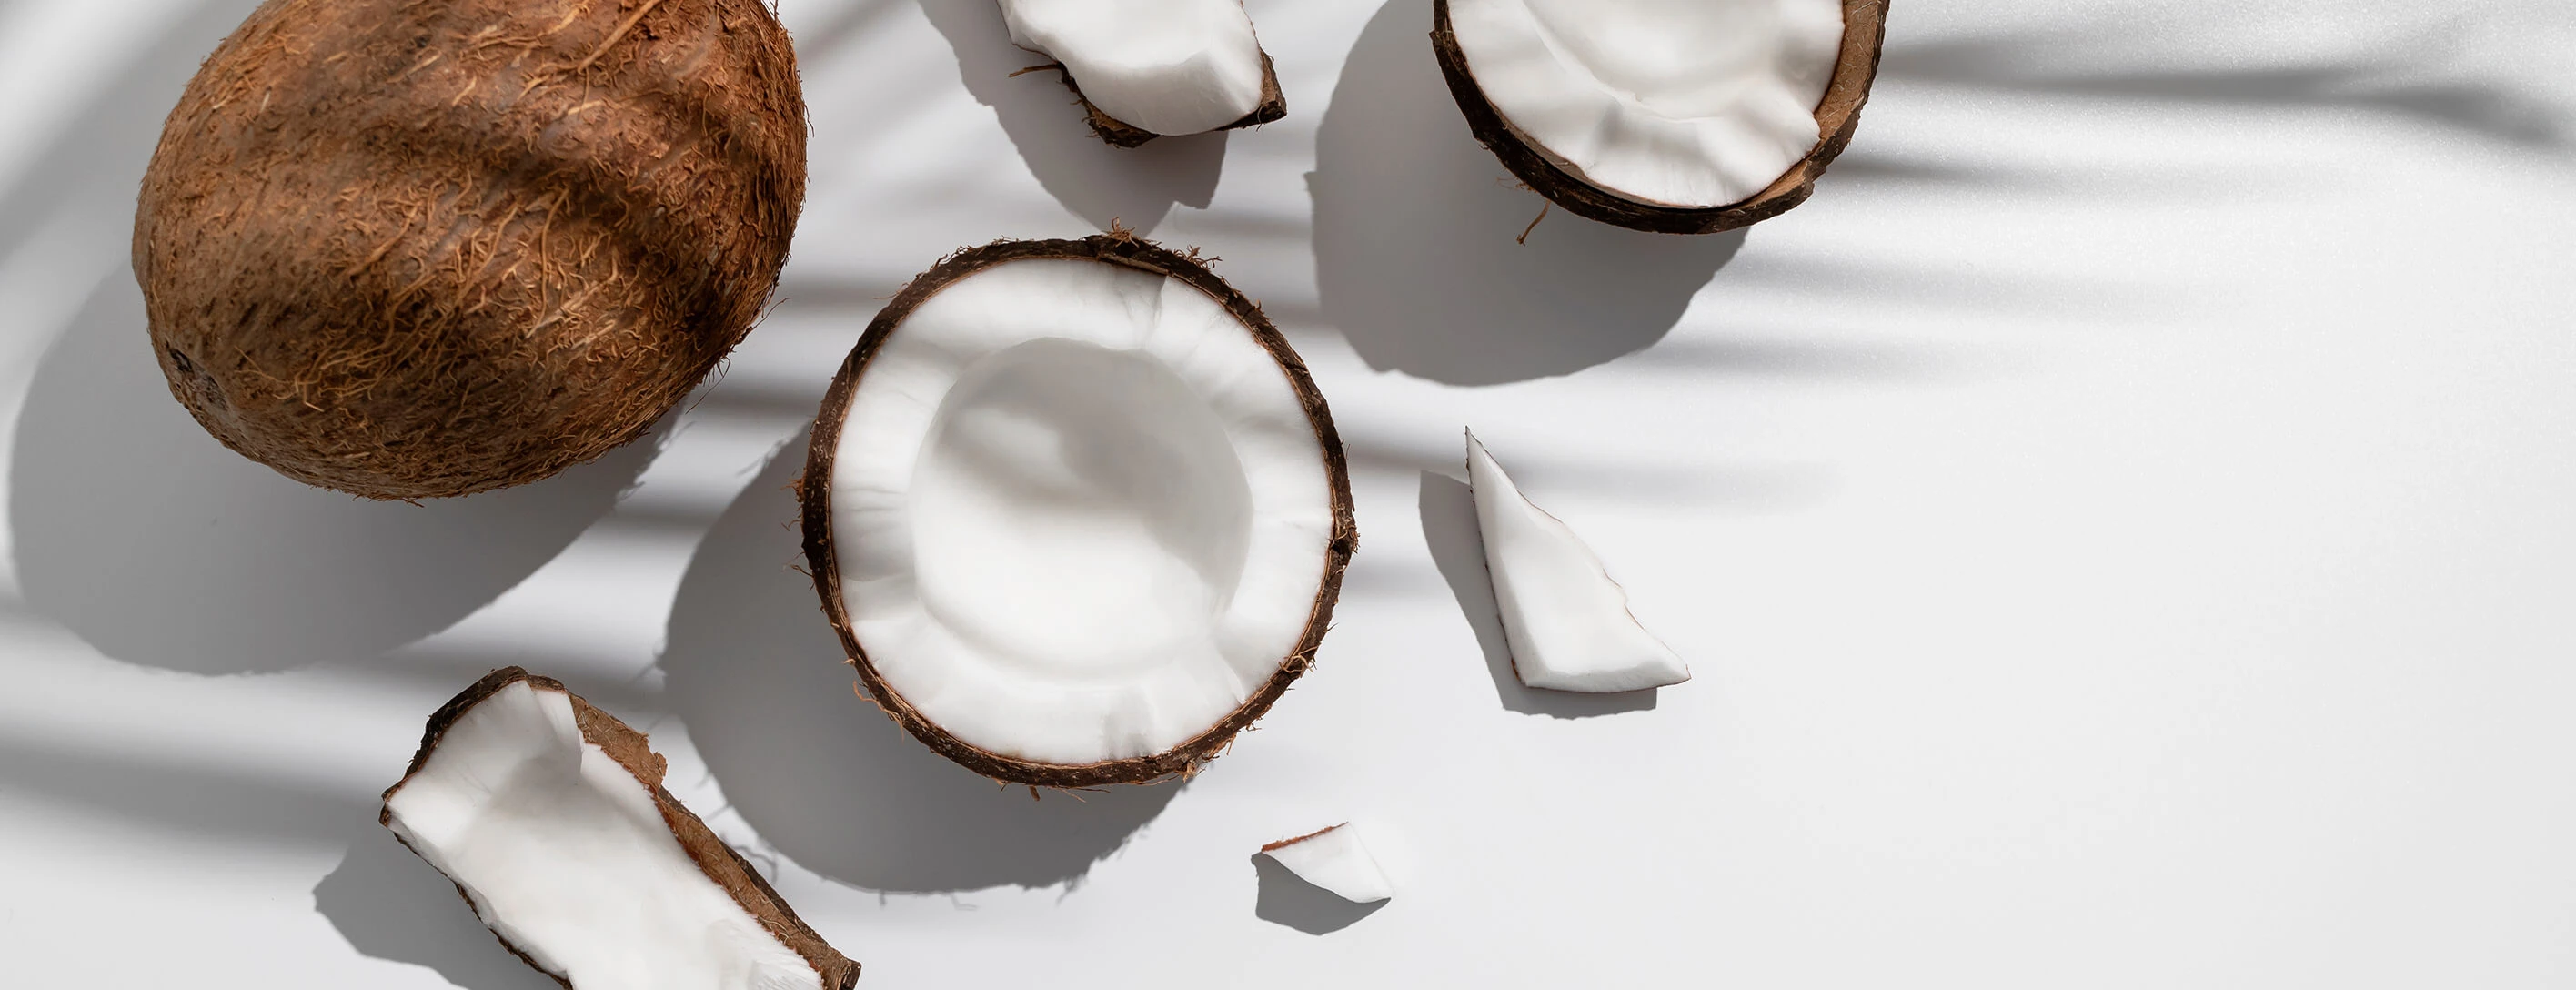 Кокосовое масло органик - делаем дома из кокосовых орехов